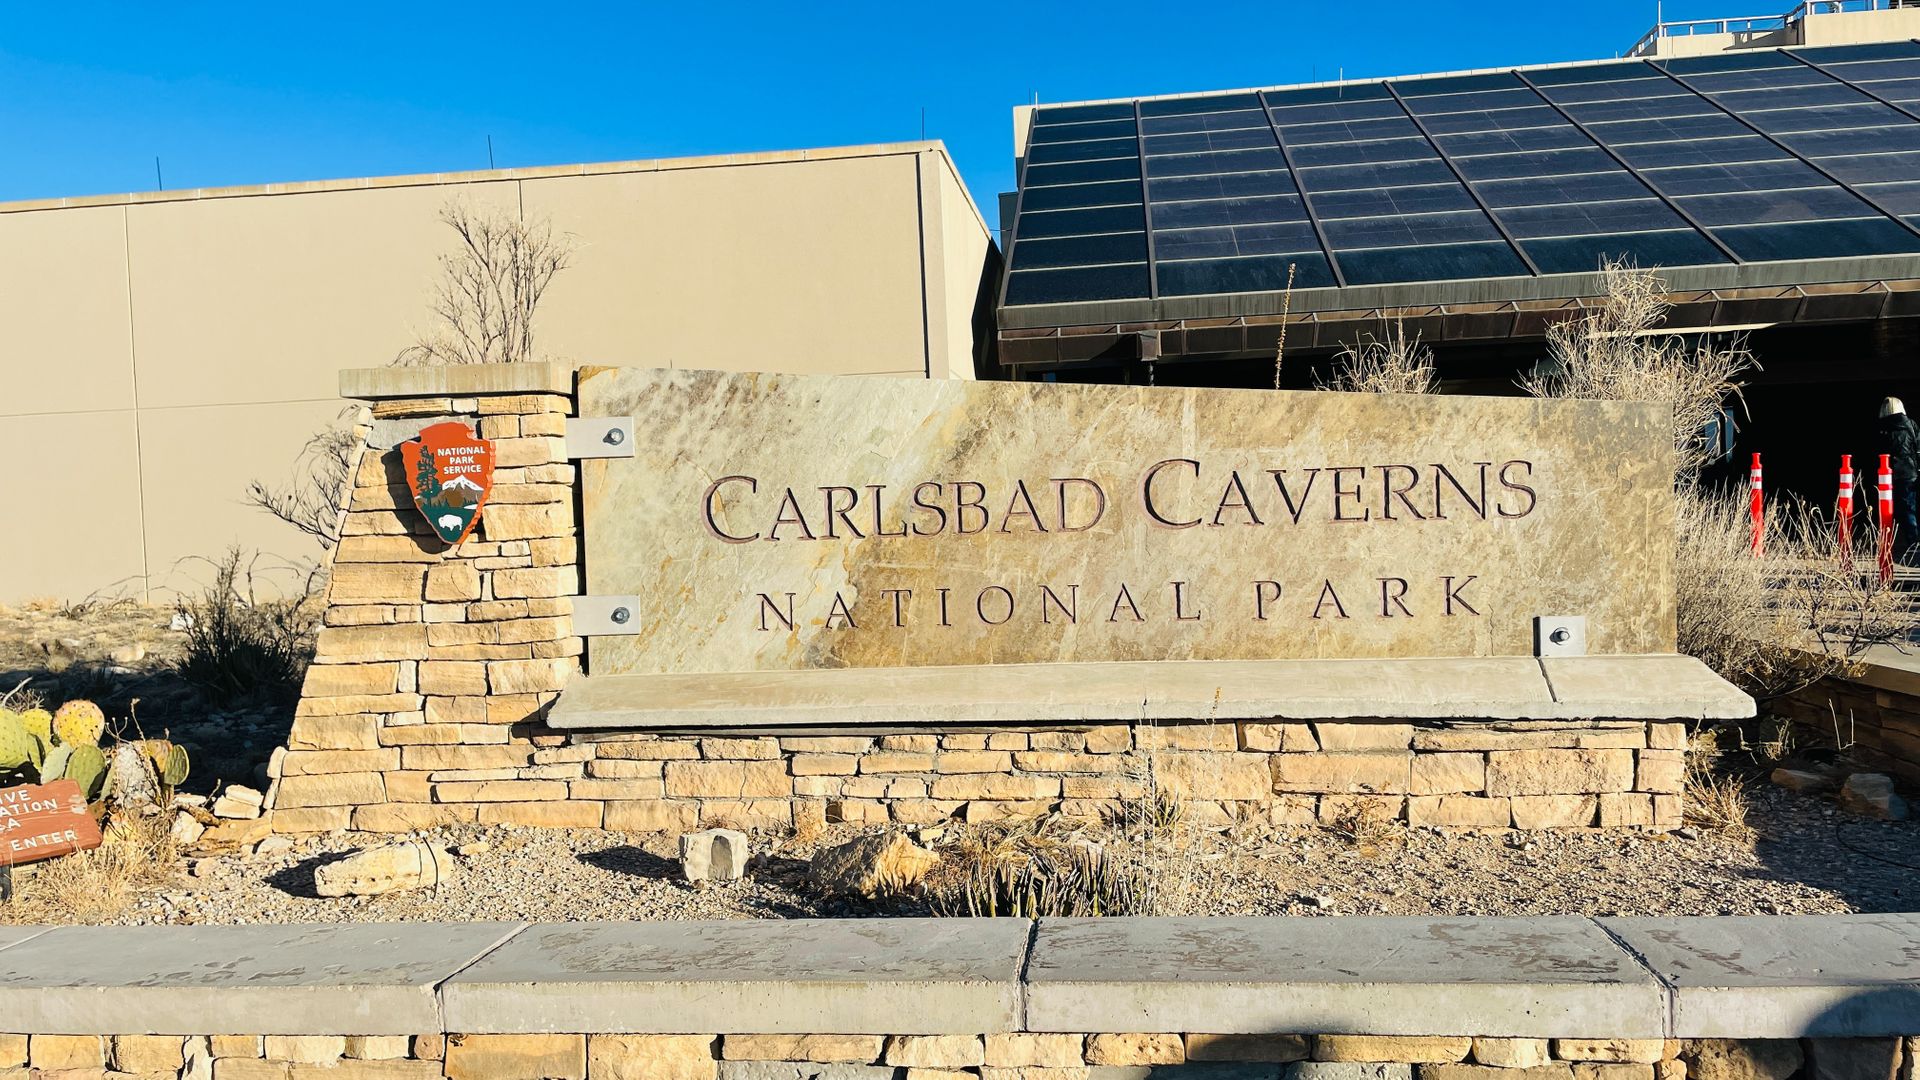 Carlsbad Caverns National Park, Carlsbad, New Mexico